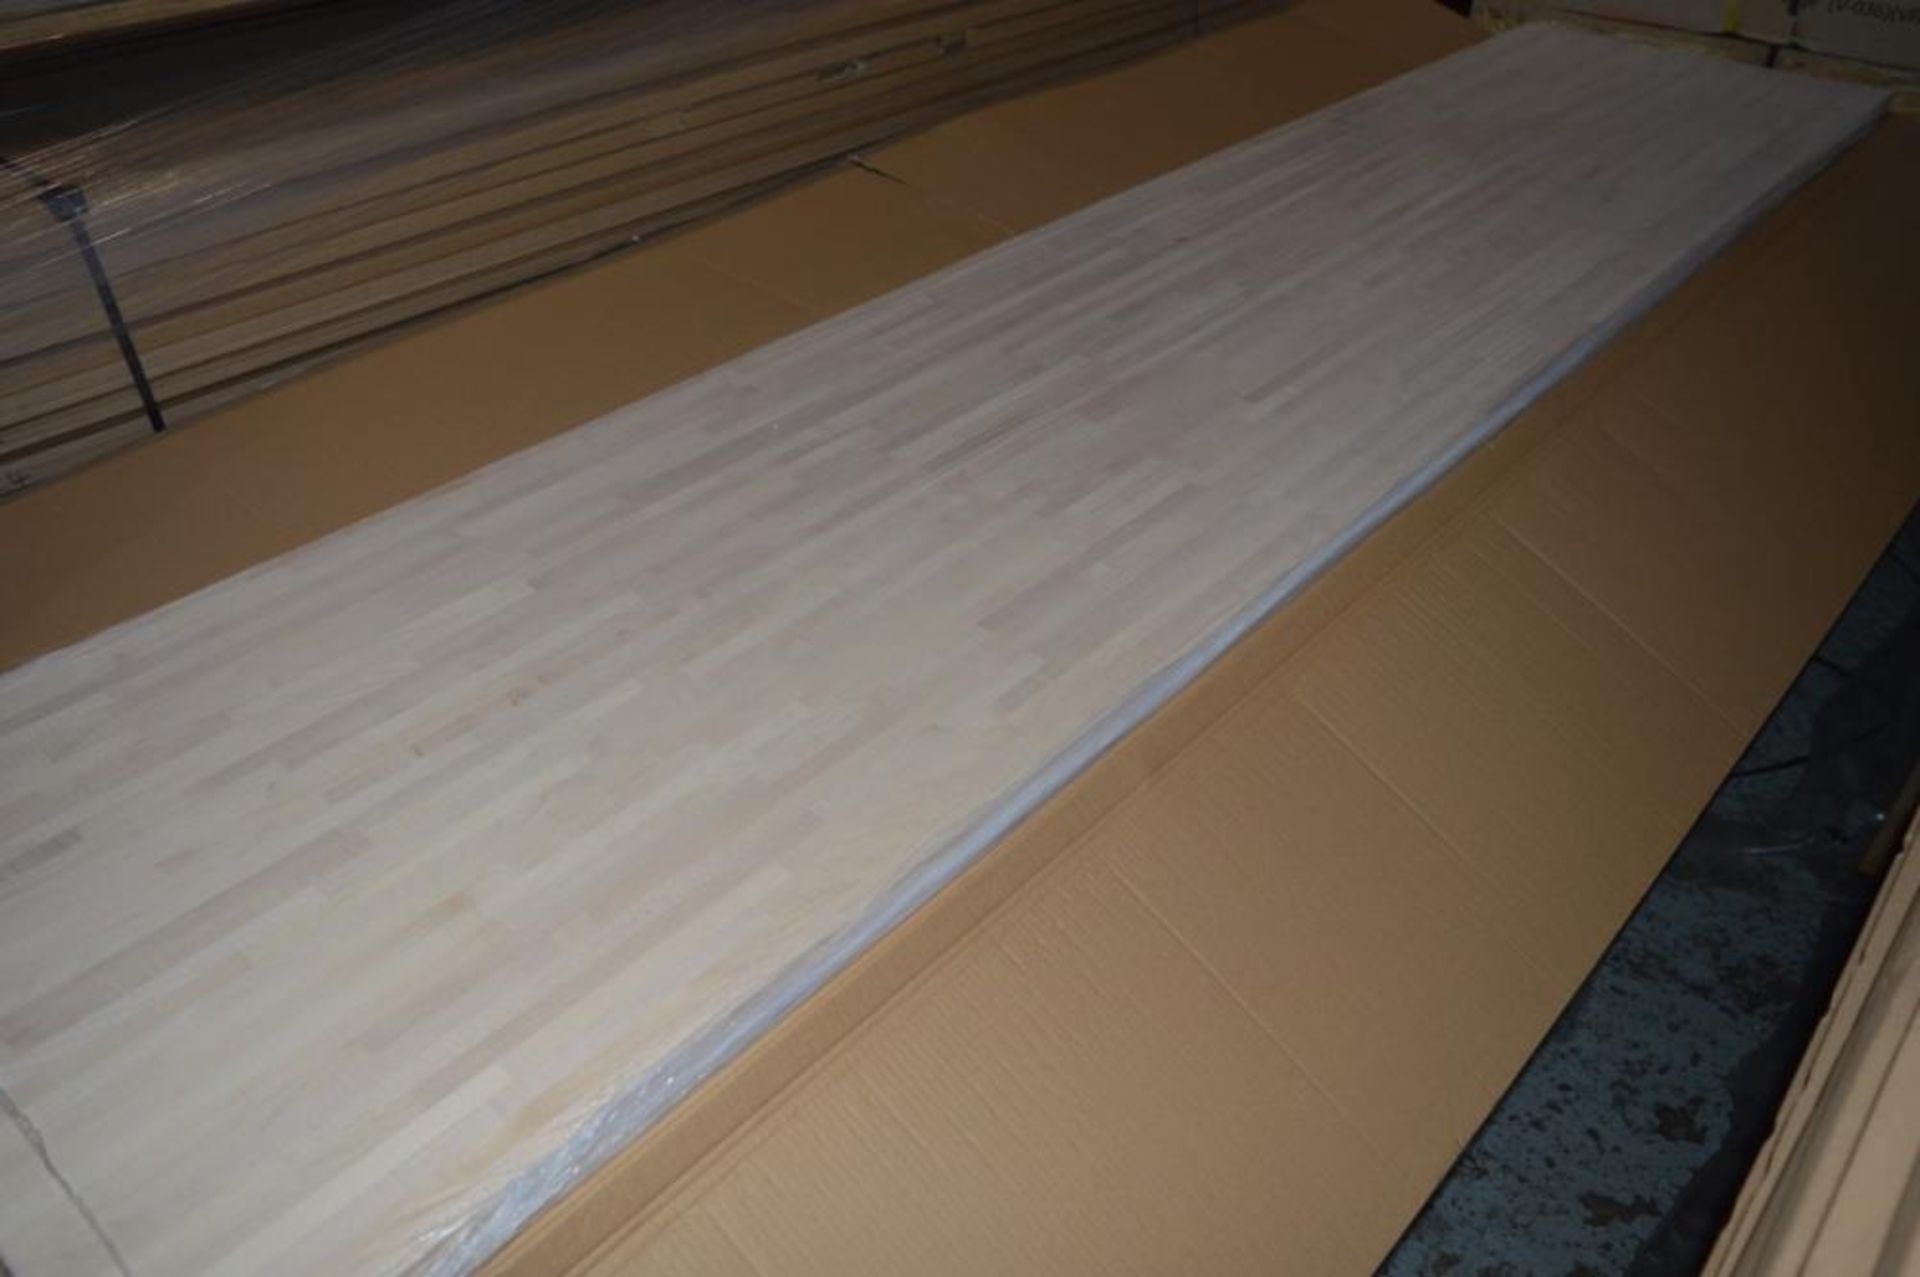 1 x Solid Wood Kitchen Worktop - EUROPEAN MAPLE - Maple Blockwood Kitchen Worktop - Size: 4000 x 650 - Image 4 of 5